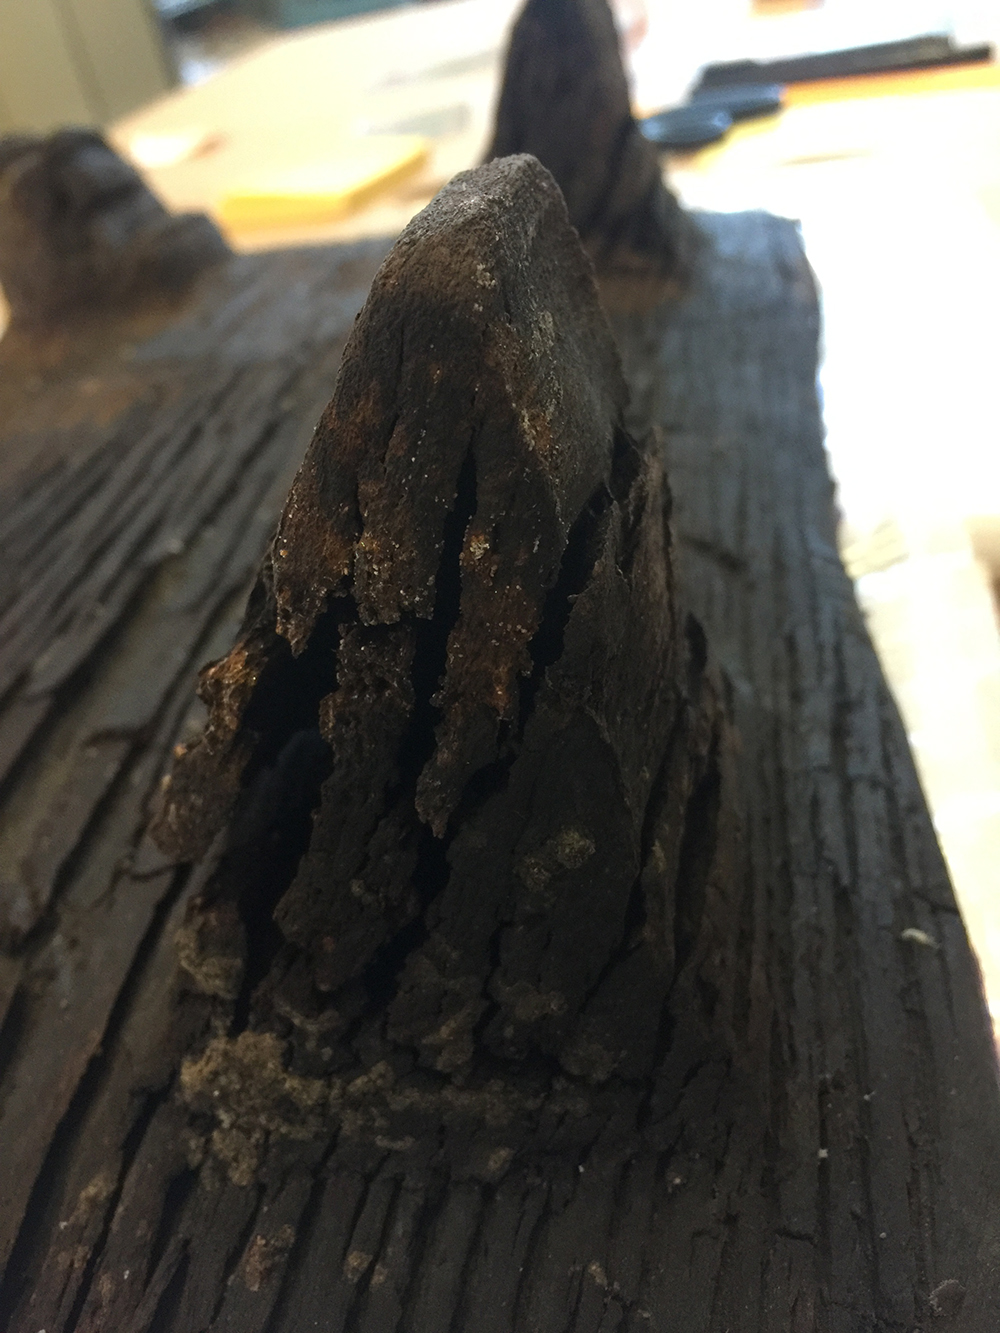 Los daños en la madera, especialmente los soportes, eran evidentes